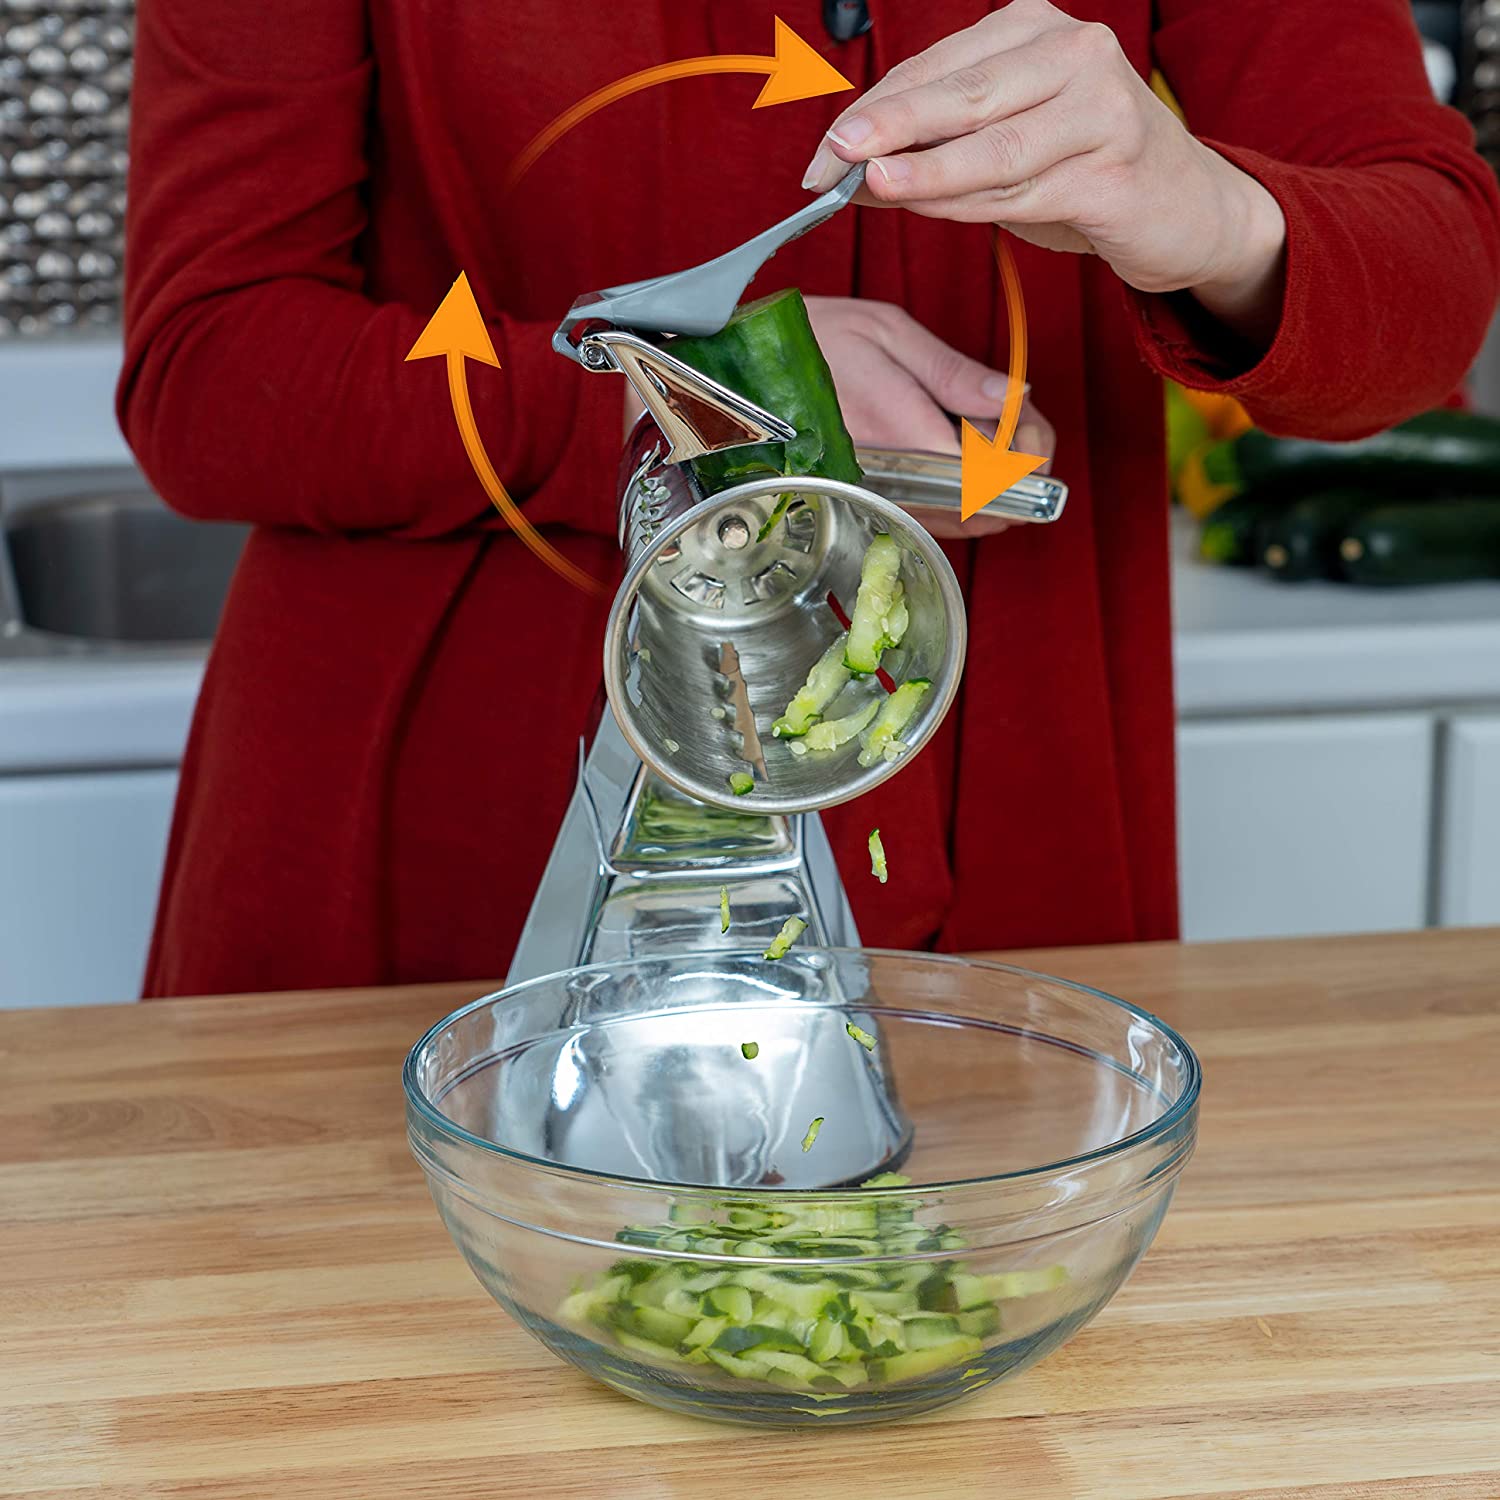 Mandolin Kitchen Manual Slicer For Cutting Vegetable Grater